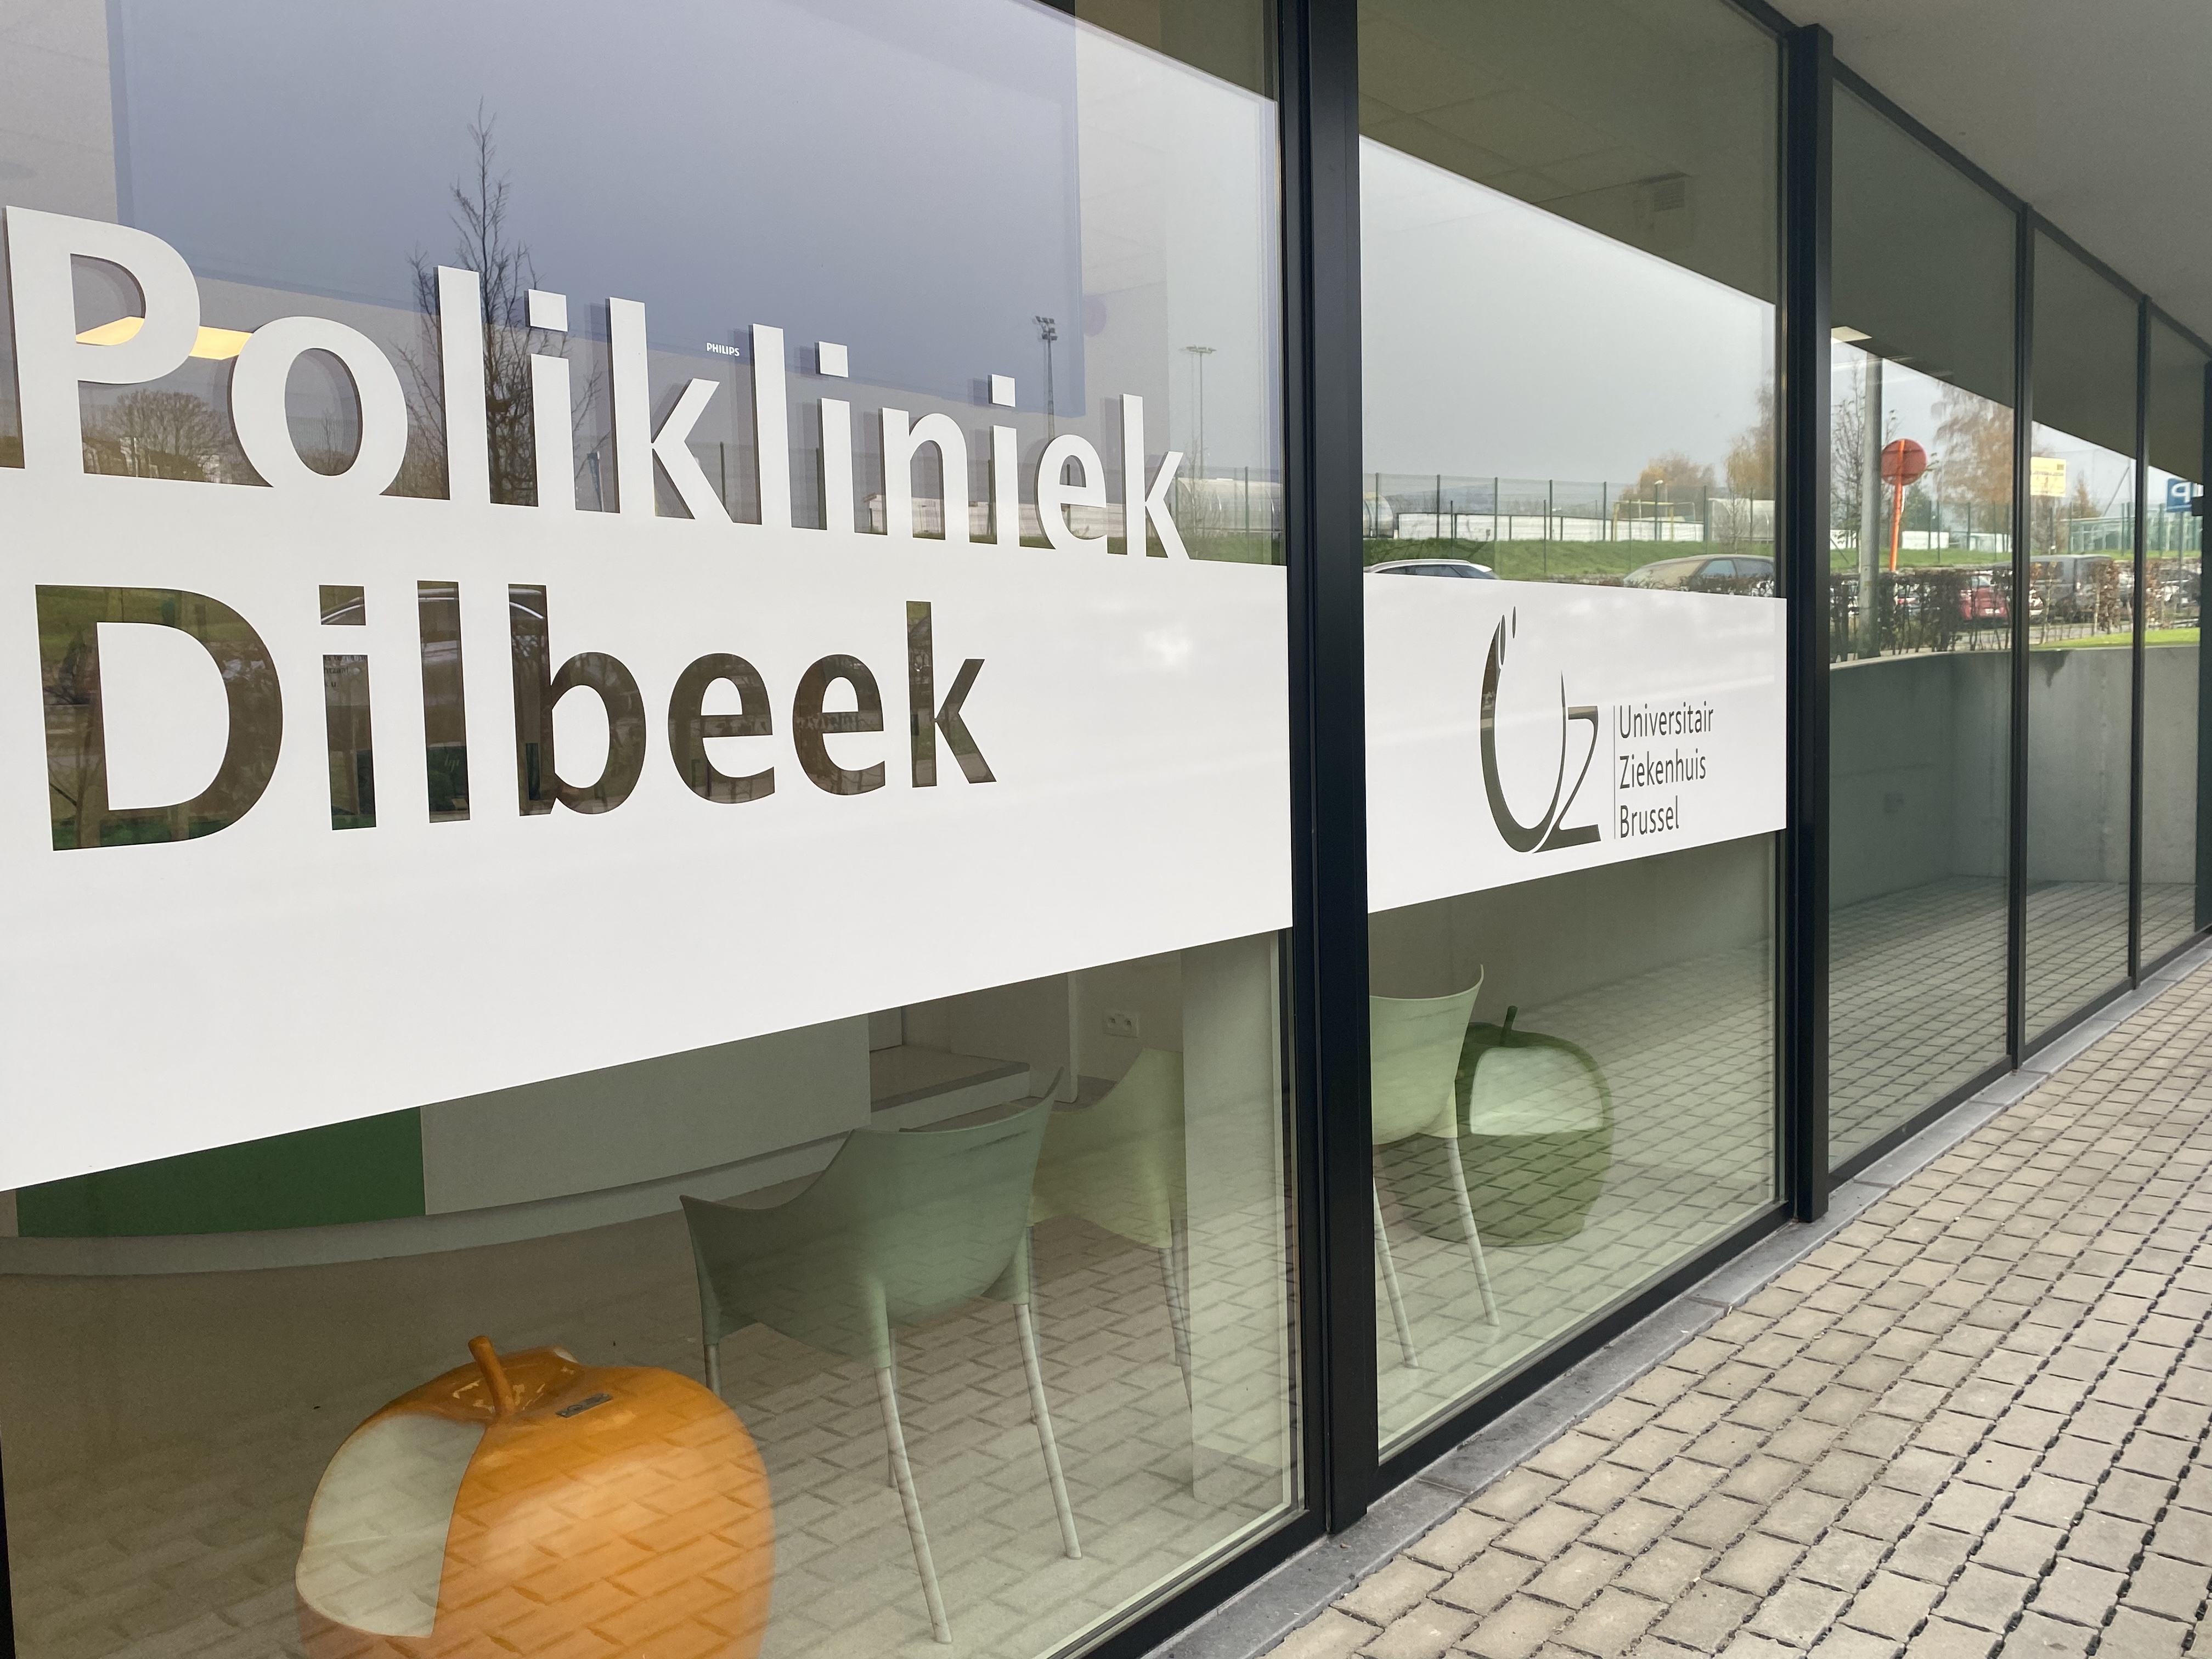 “We brengen de geriatrische expertise van het UZ Brussel naar de Polikliniek in Dilbeek”